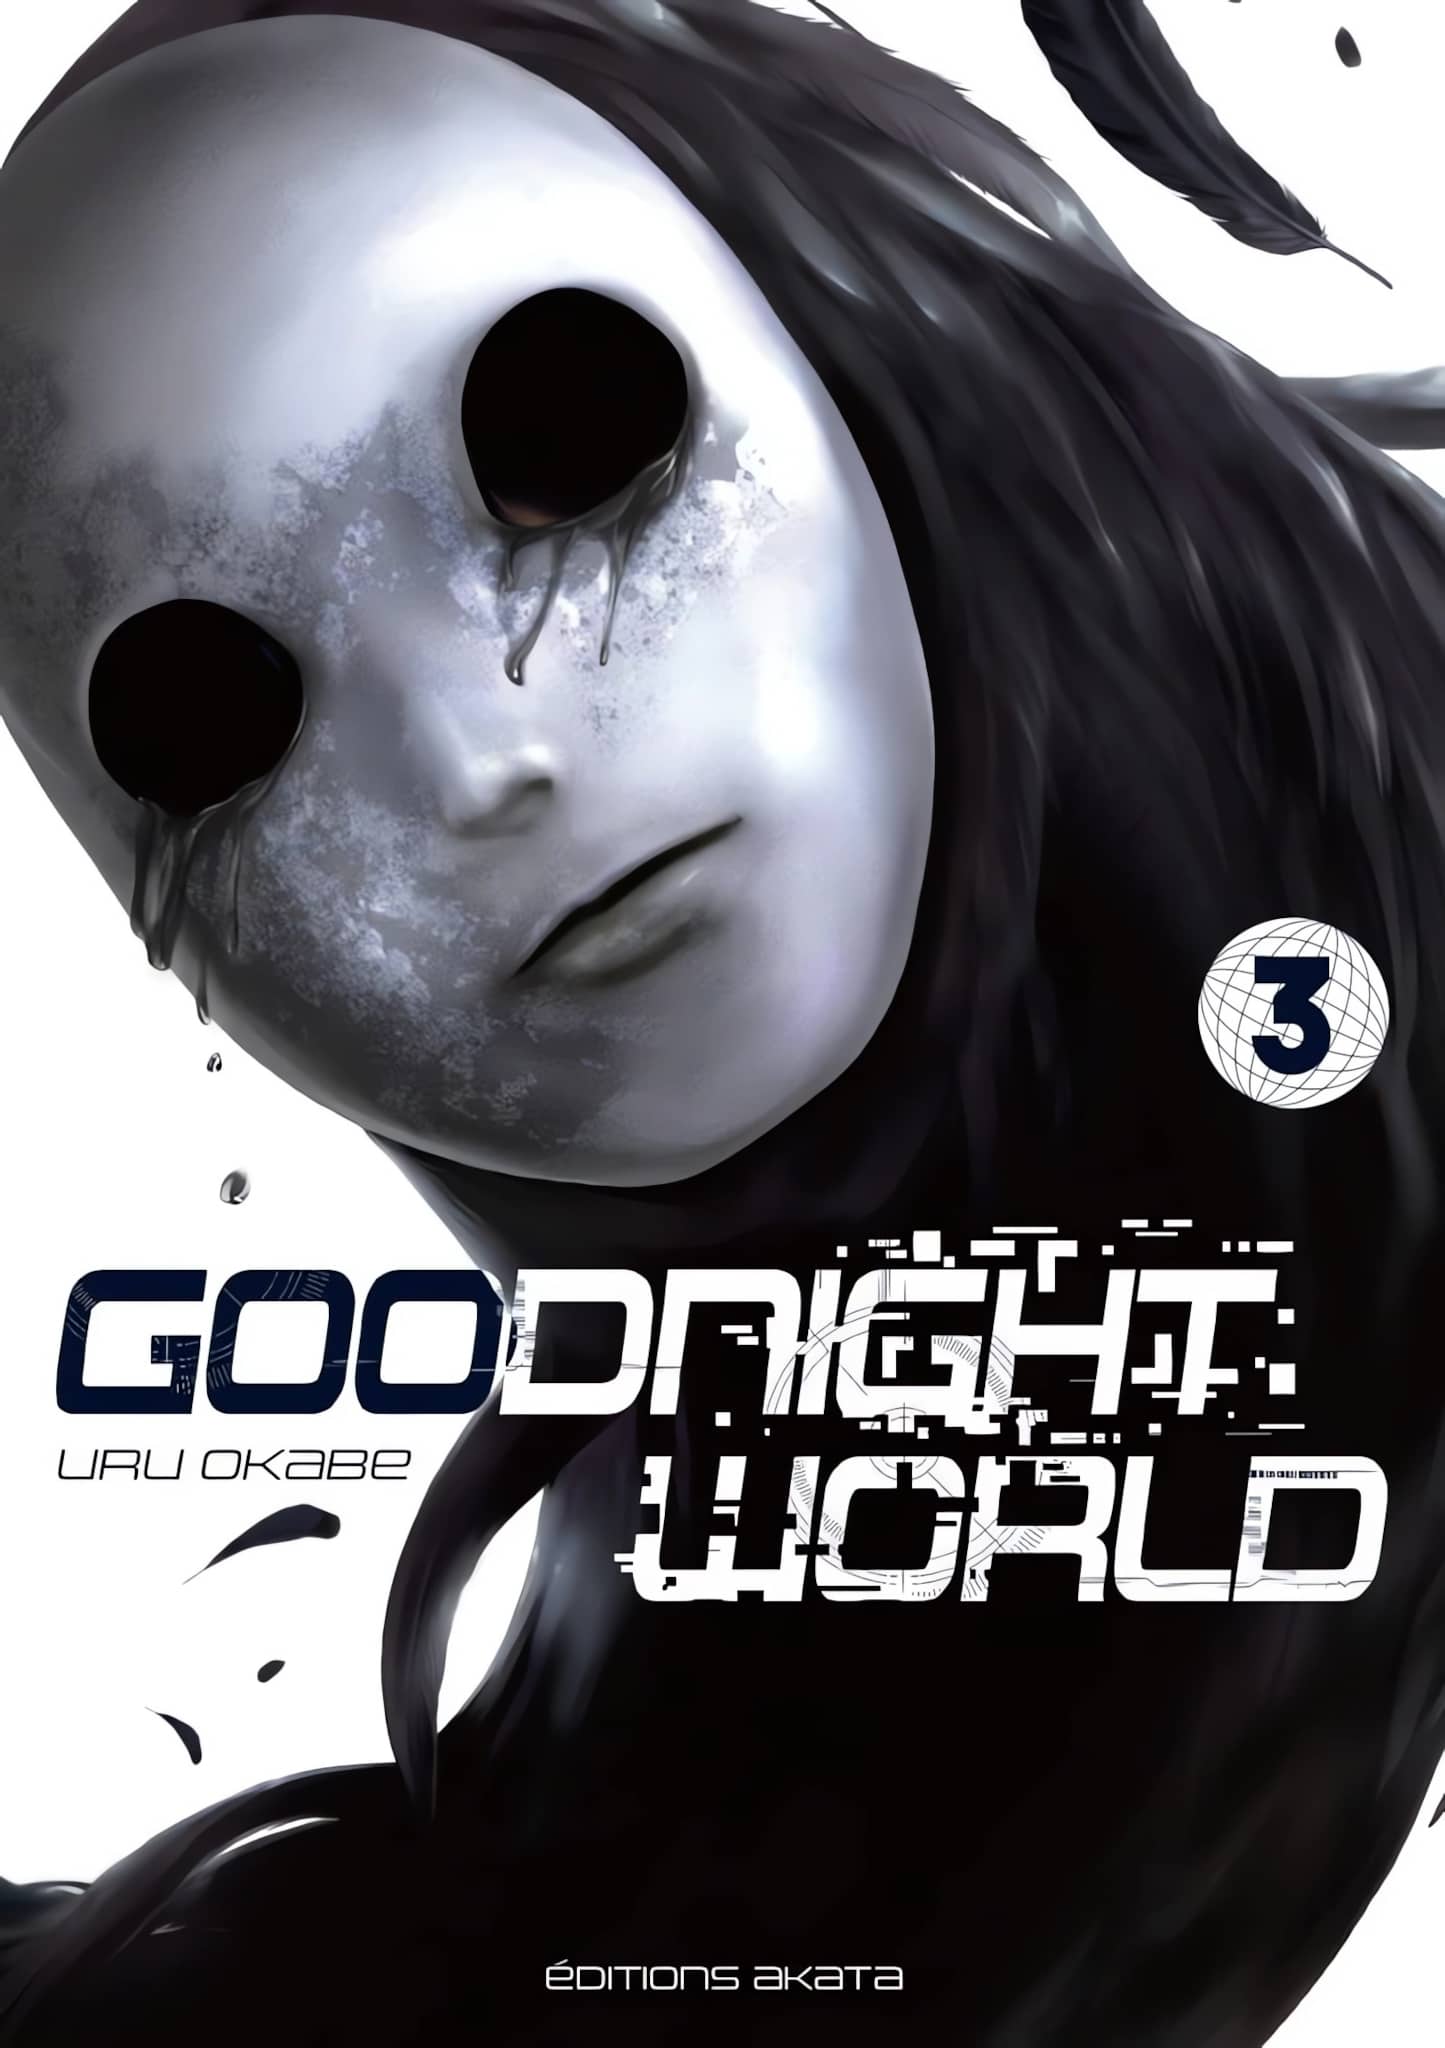 GOOD NIGHT WORLD (anime) - AnimOtaku